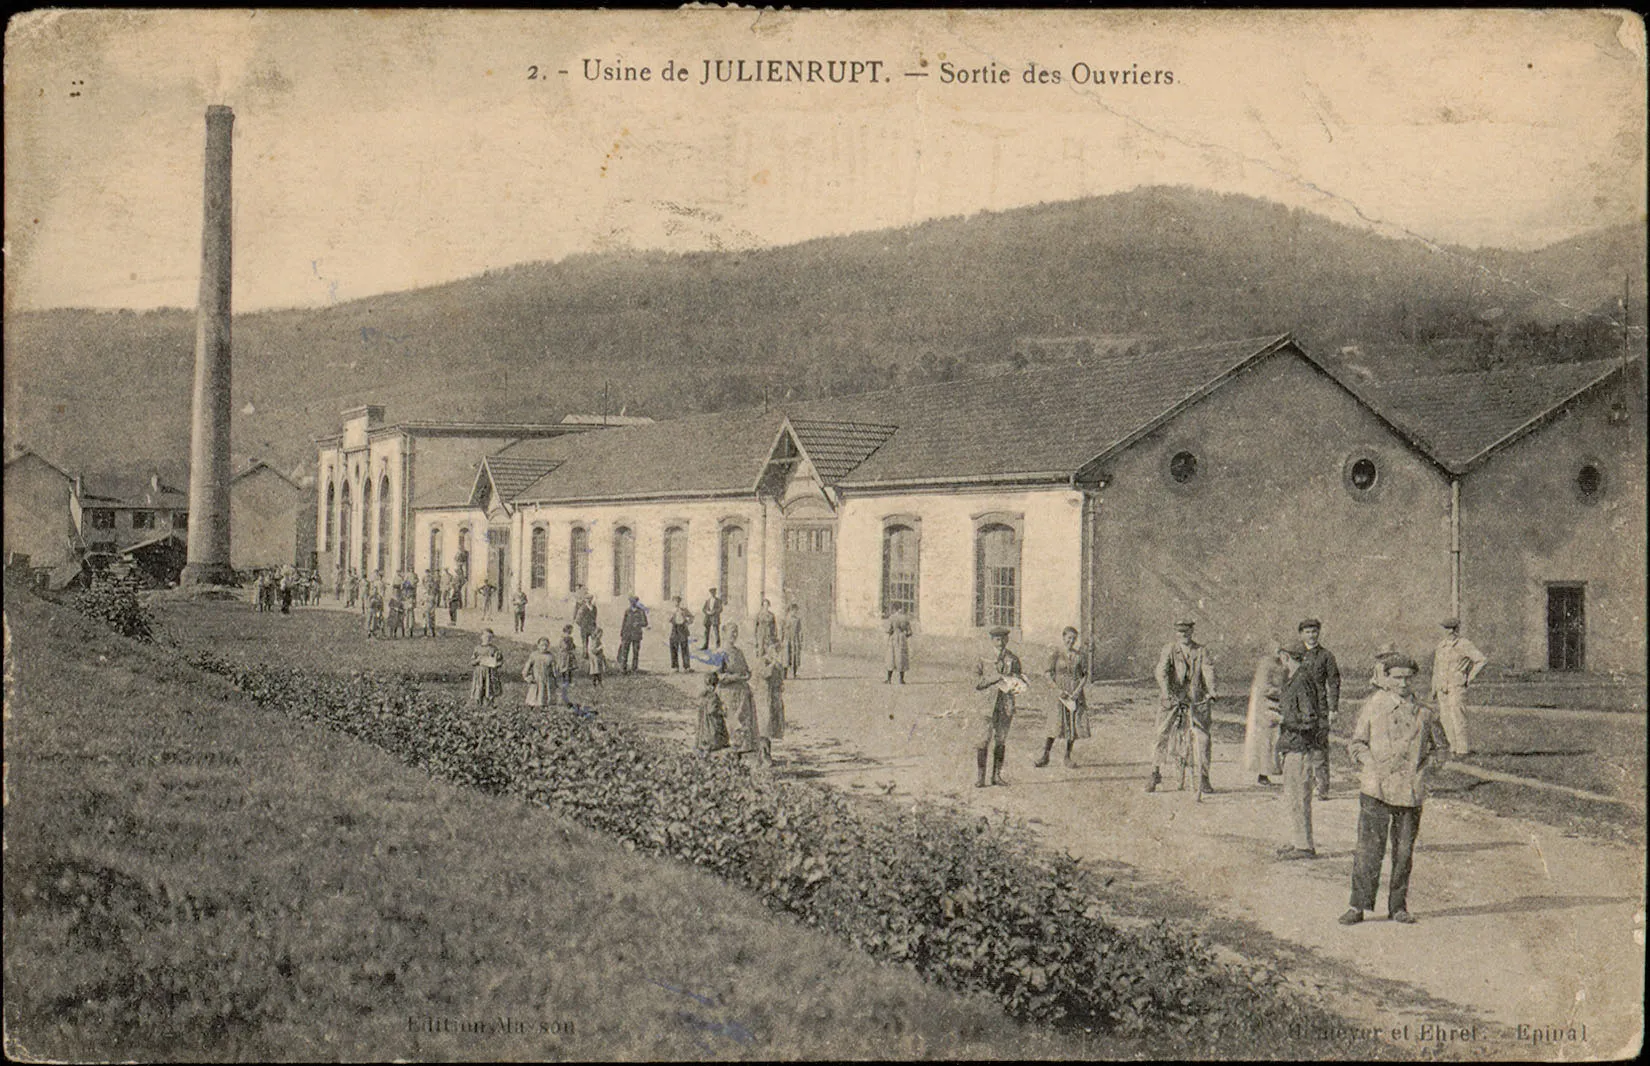 Photo showing: Carte postale n°2  Carte postale représentant la sortie des ouvriers de l'usine de Julienrupt